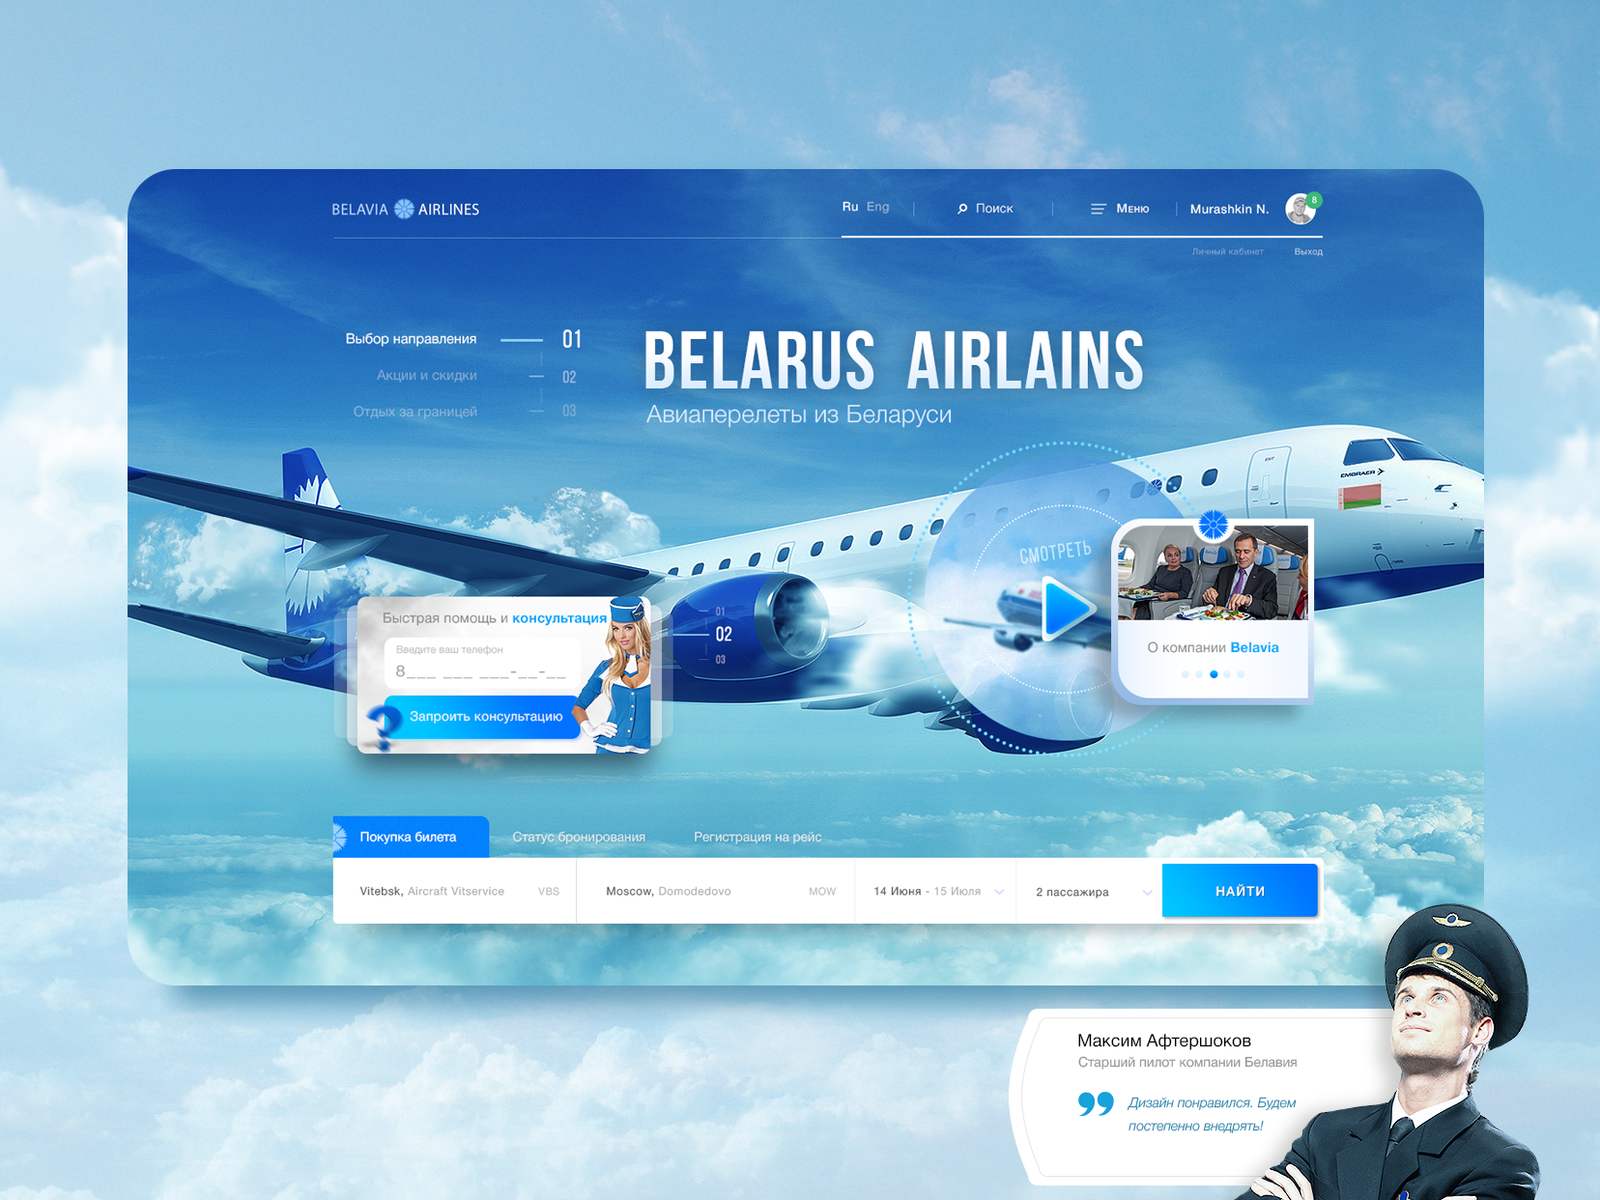 Лидер среди белорусских авиакомпаний — оао belavia